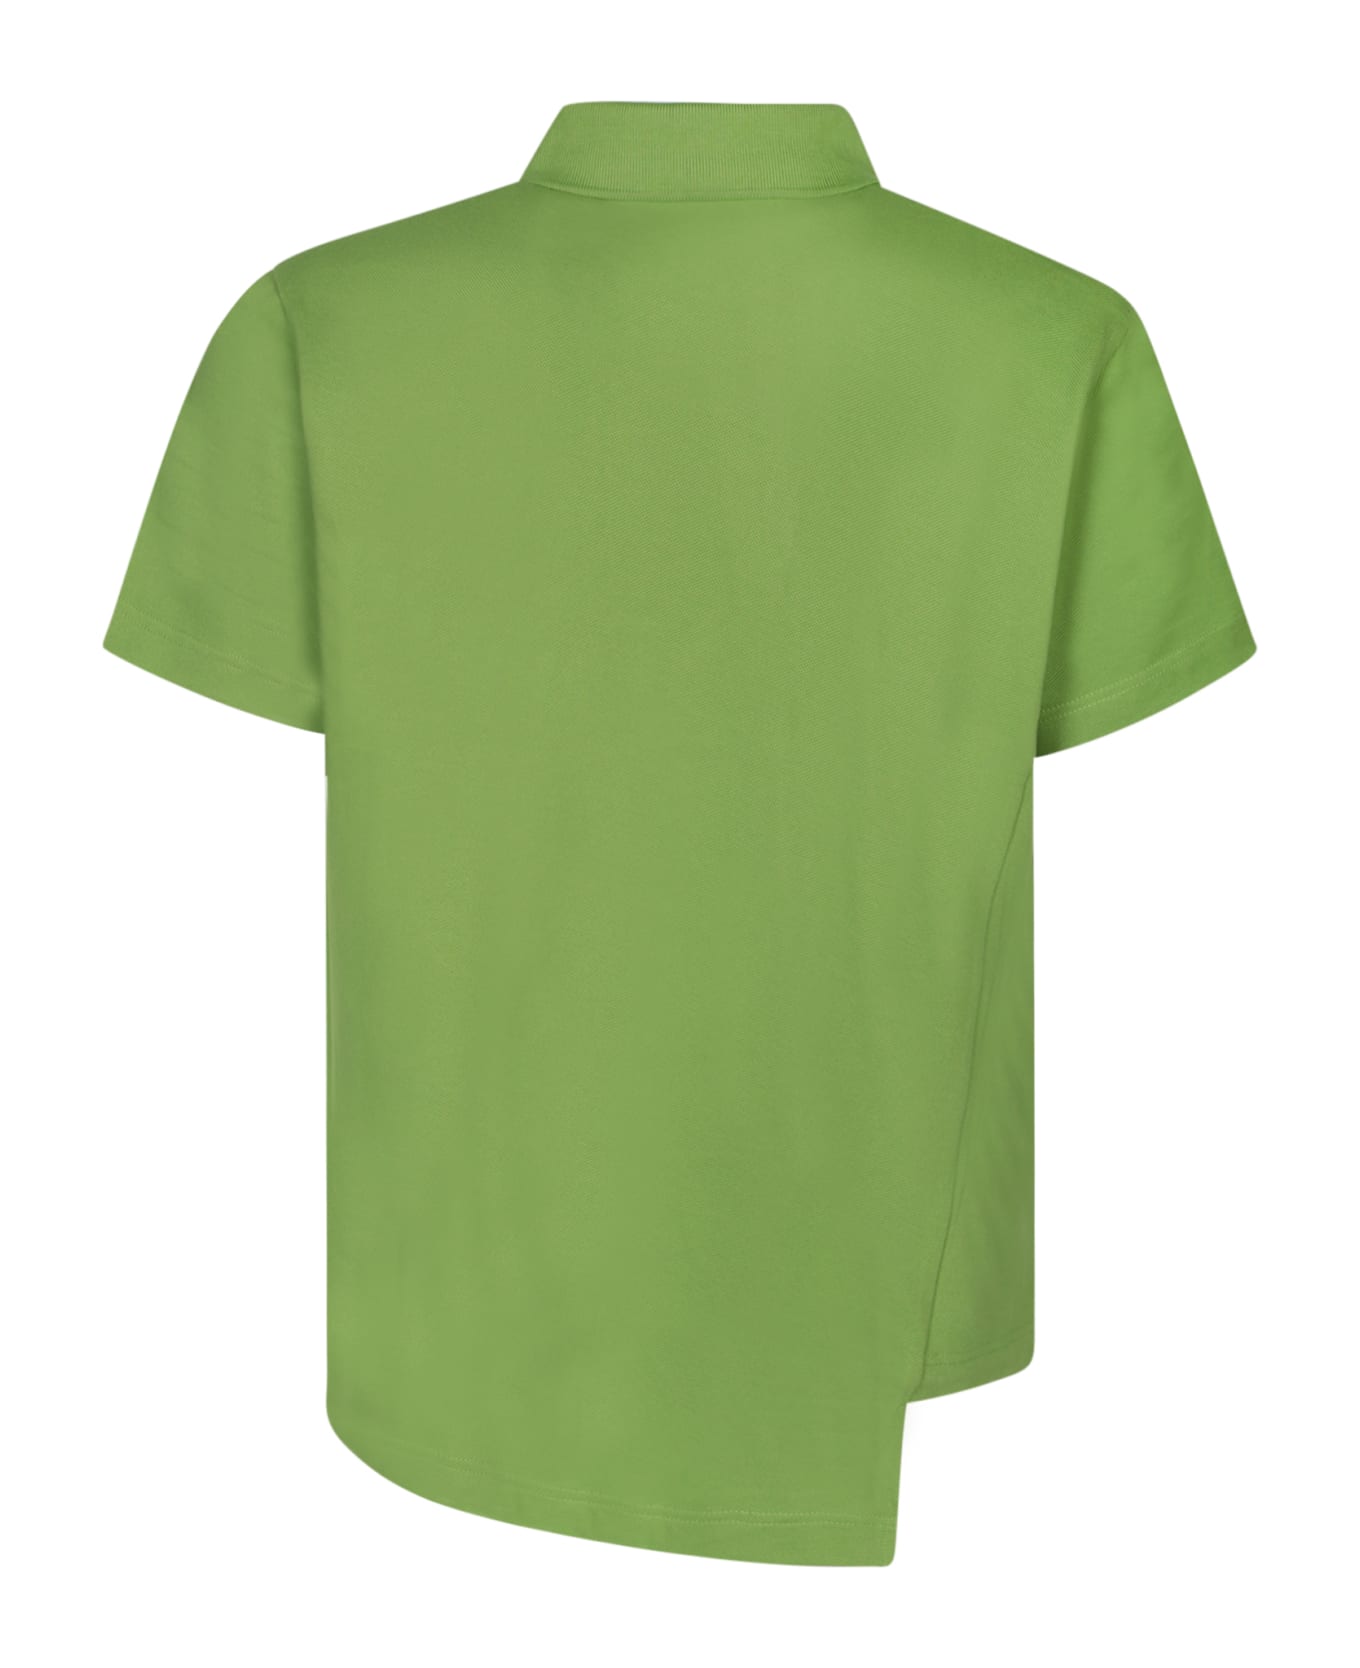 Comme des Garçons Shirt Boss Asymmetric Green Polo Shirt - Green ポロシャツ